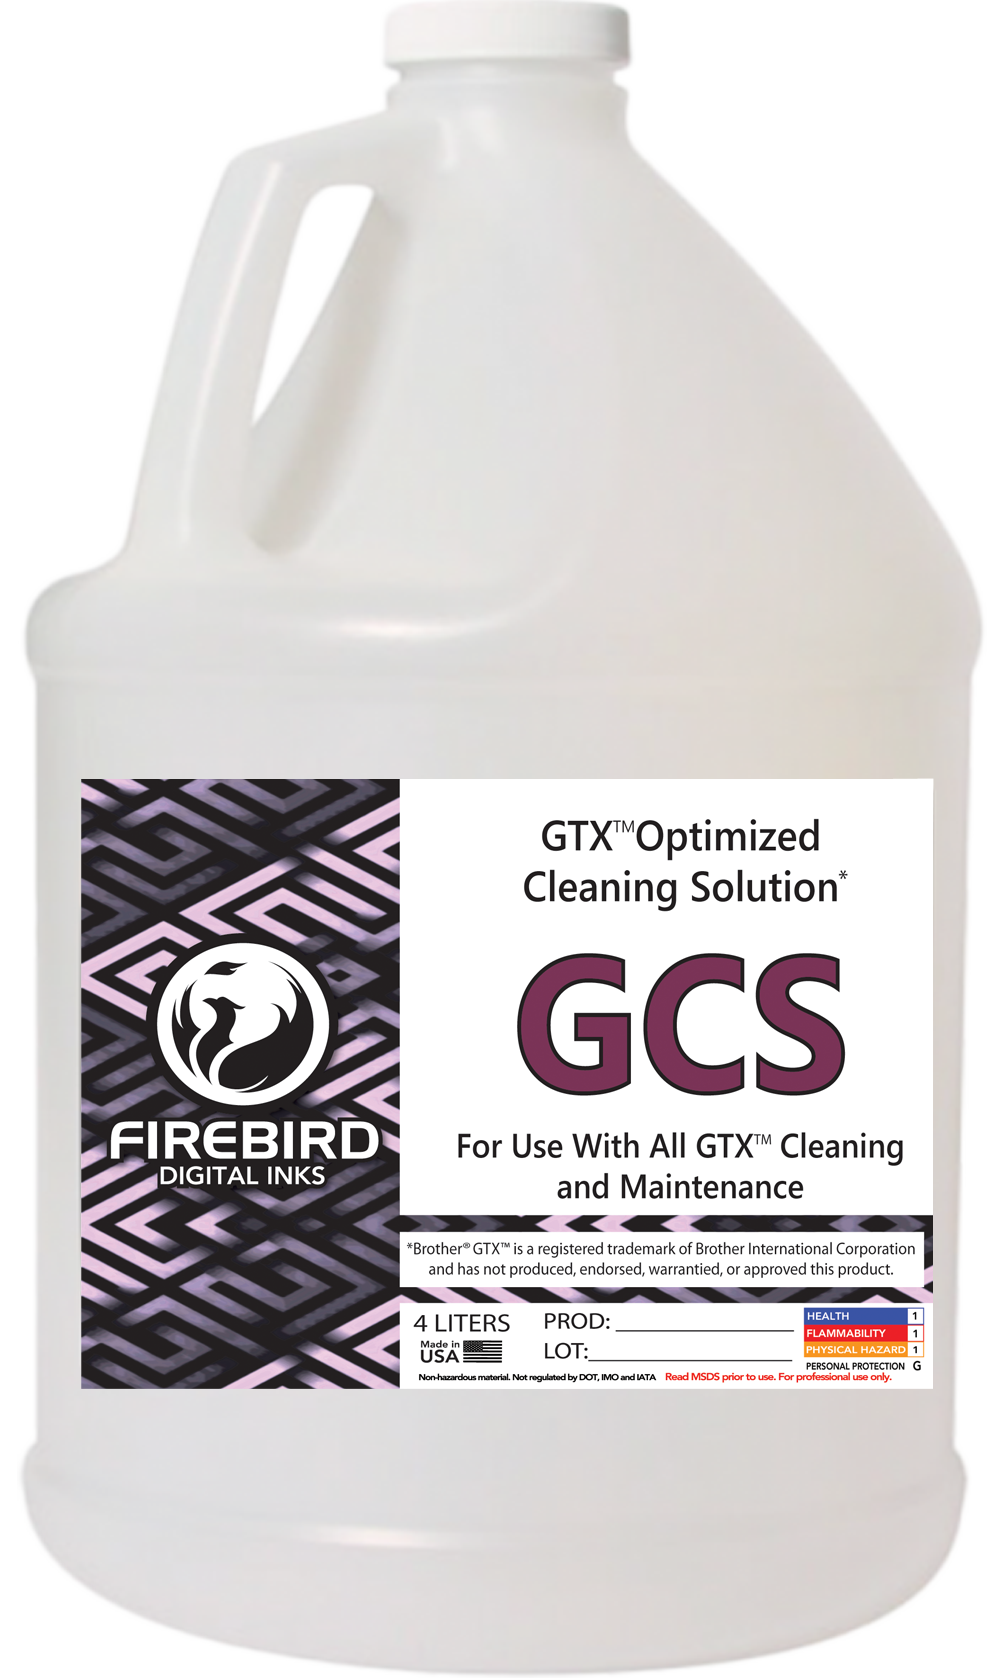 FIREBIRD GTX Optimized Cleaning Solution